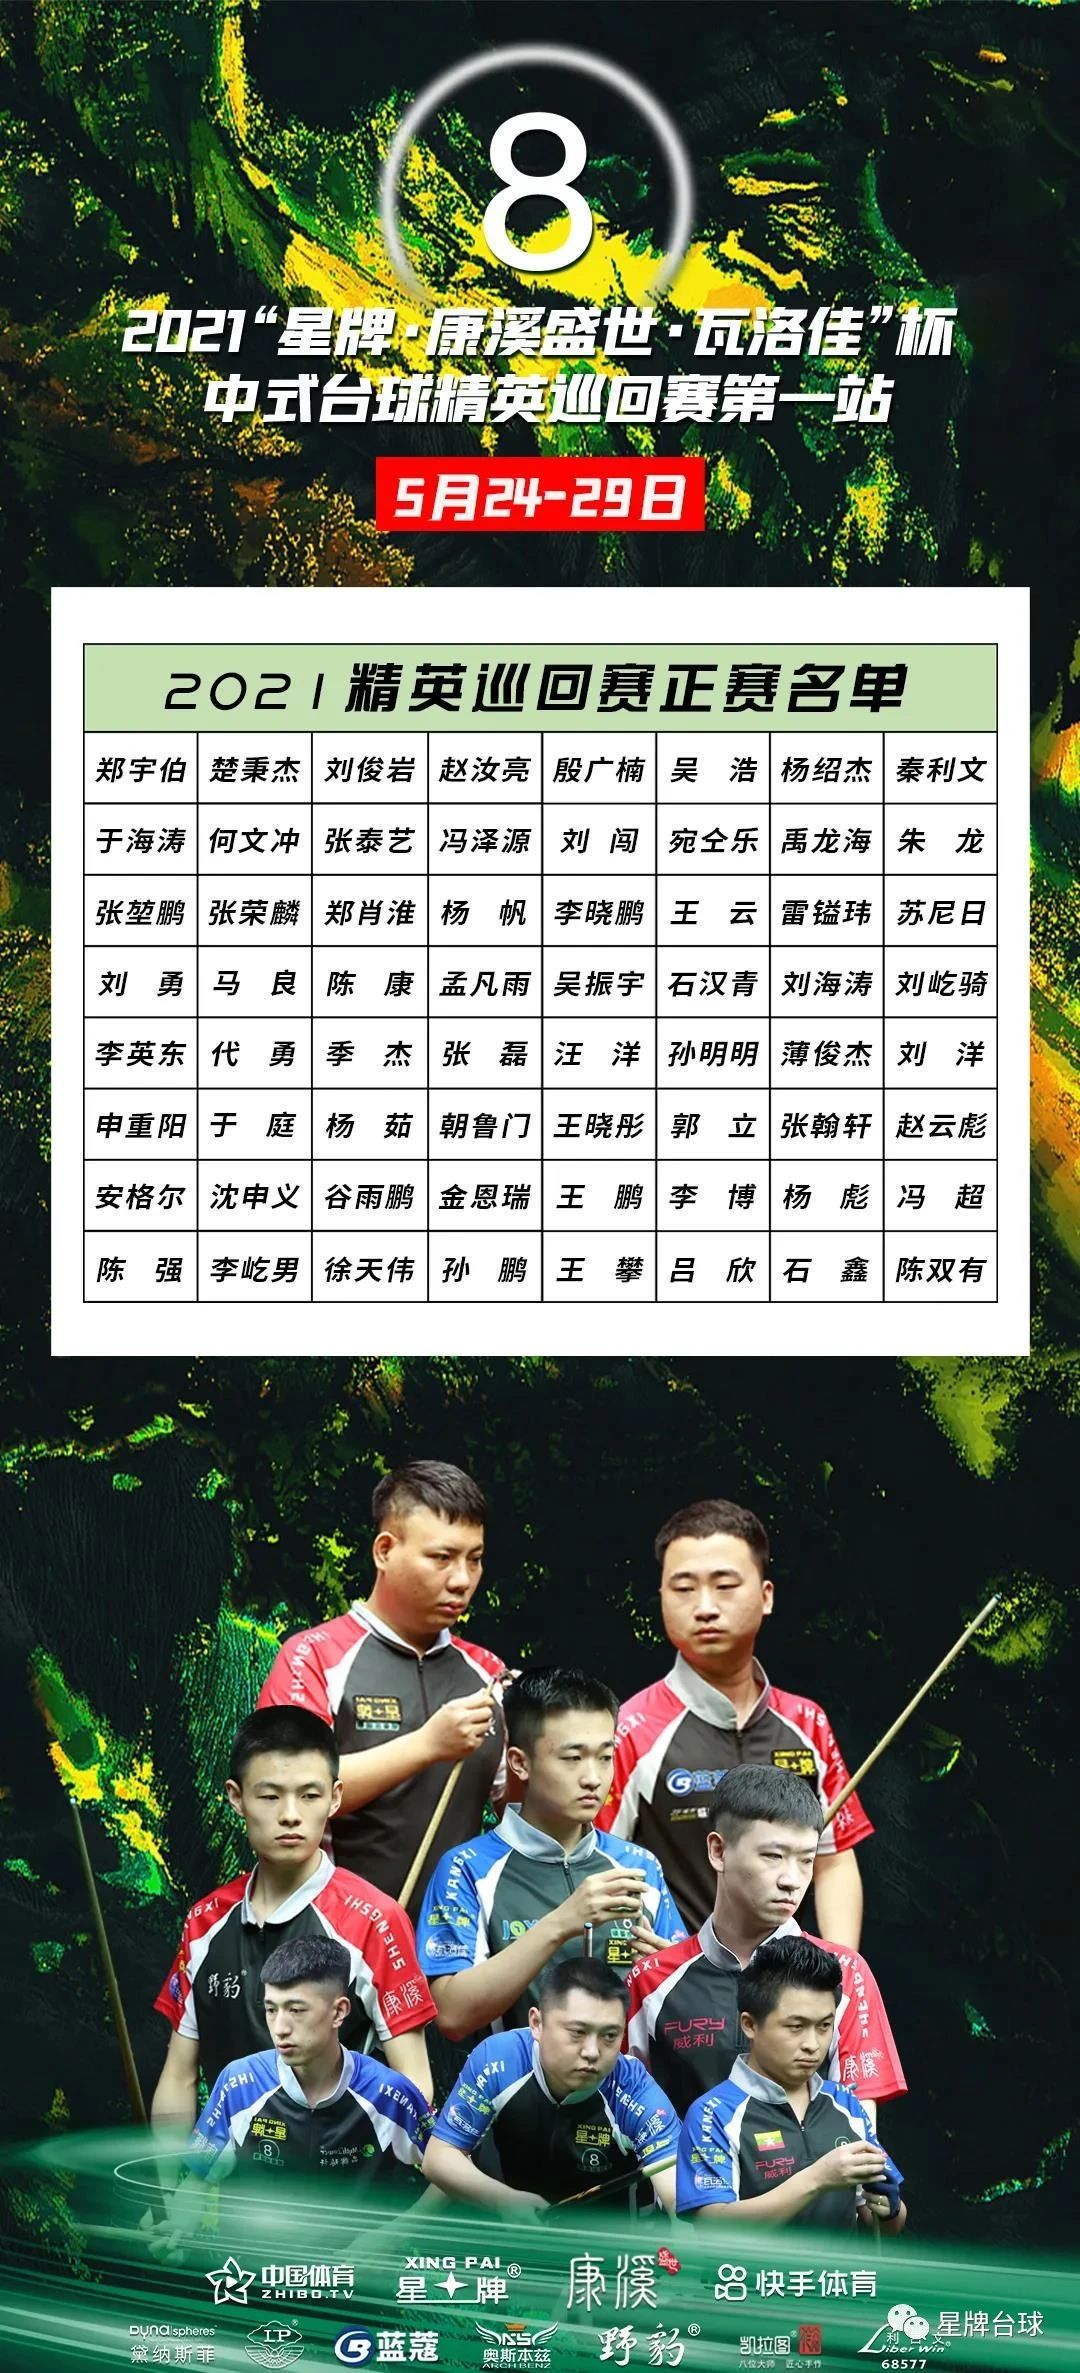 2021“kok娱乐平台
·康溪盛世·瓦洛佳”杯中式台球精英巡回赛第一站竞赛规程